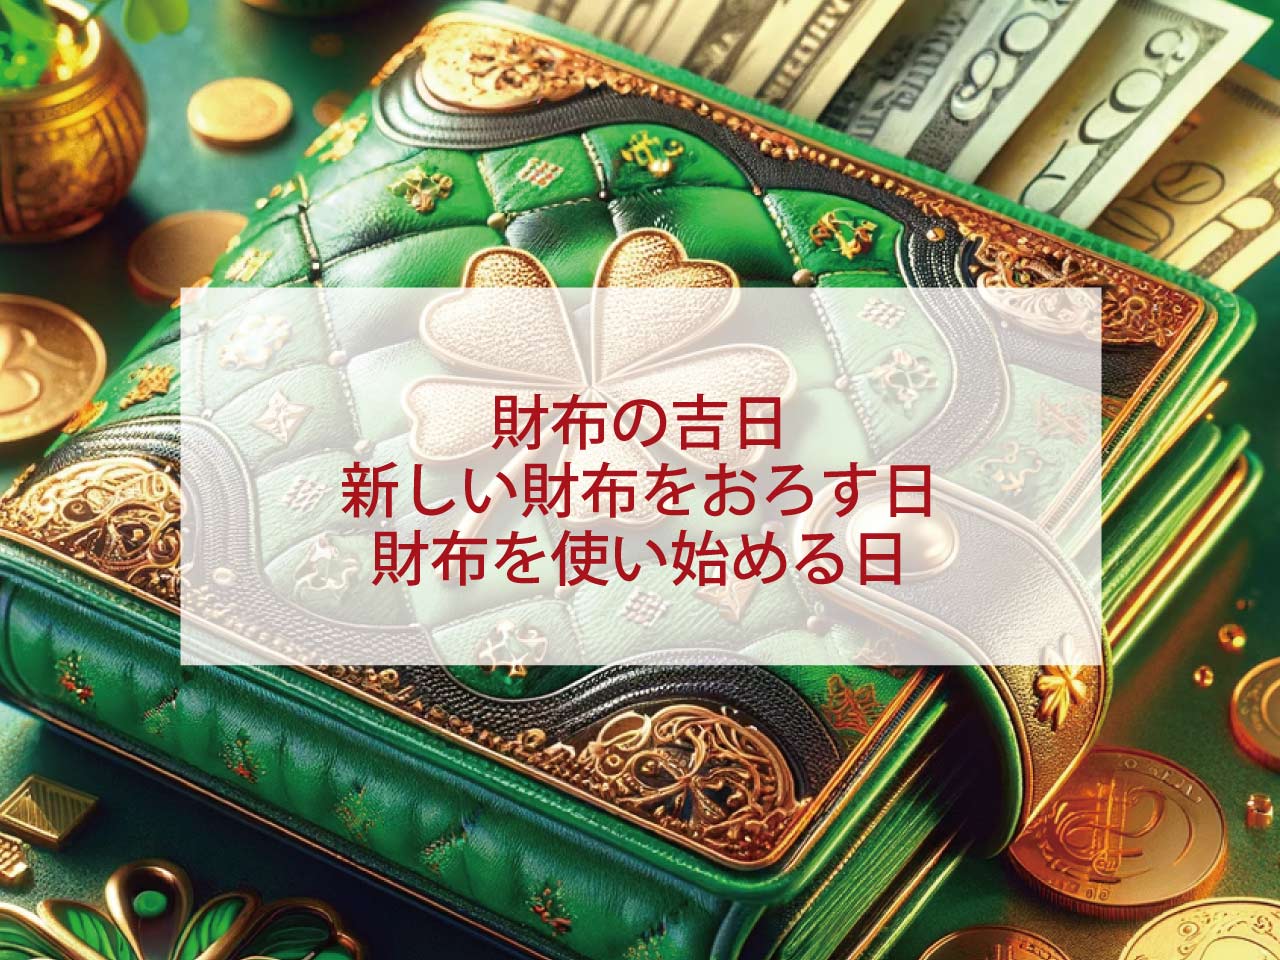 財布の吉日新しい財布をおろす日財布を使い始める日金運が上がる財布の色とラッキーカラー春財布と秋財布